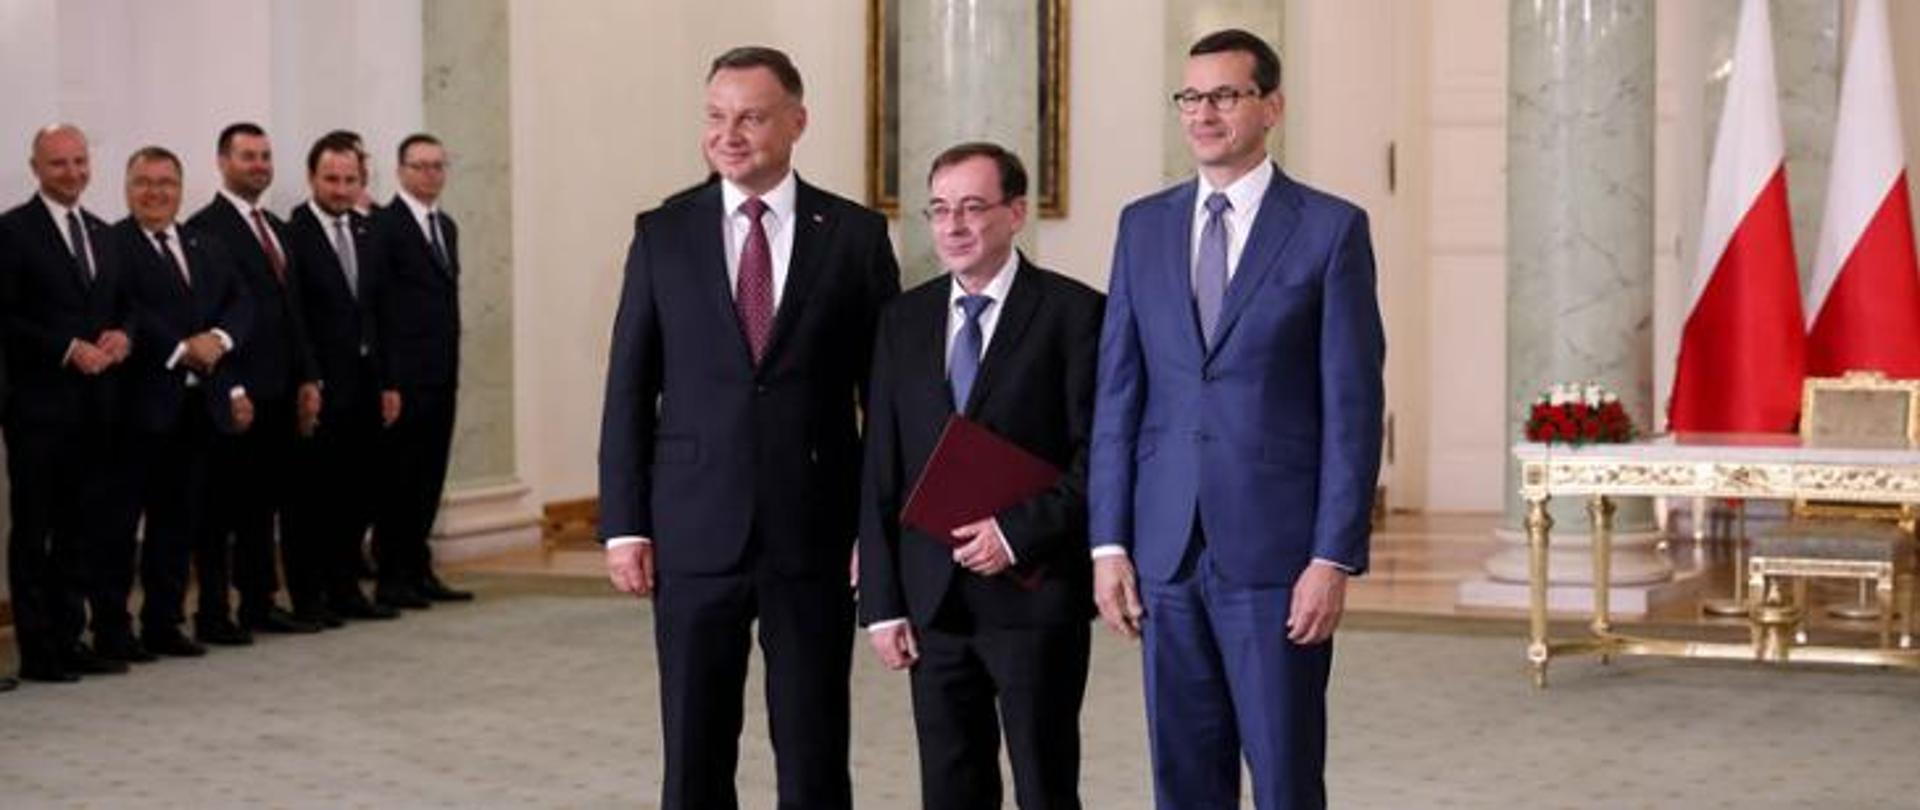 Na zdjęciu: prezydent RP Andrzej Duda, premier Mateusz Morawiecki oraz minister Mariusz Kamiński pozują do zdjęcia podczas powołania 